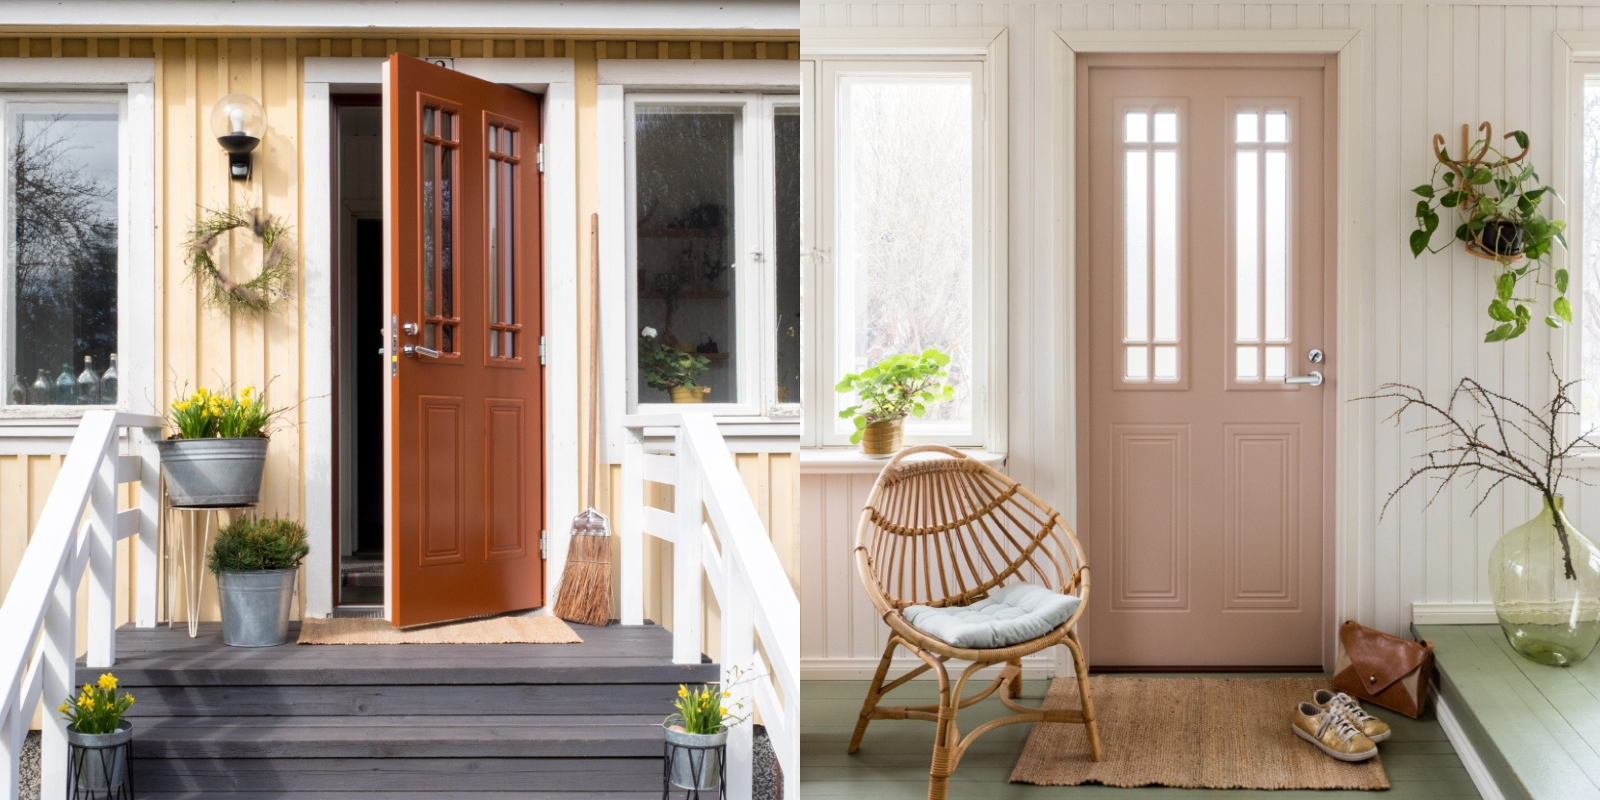 Matcha din ytterdörr med både fasad och hall